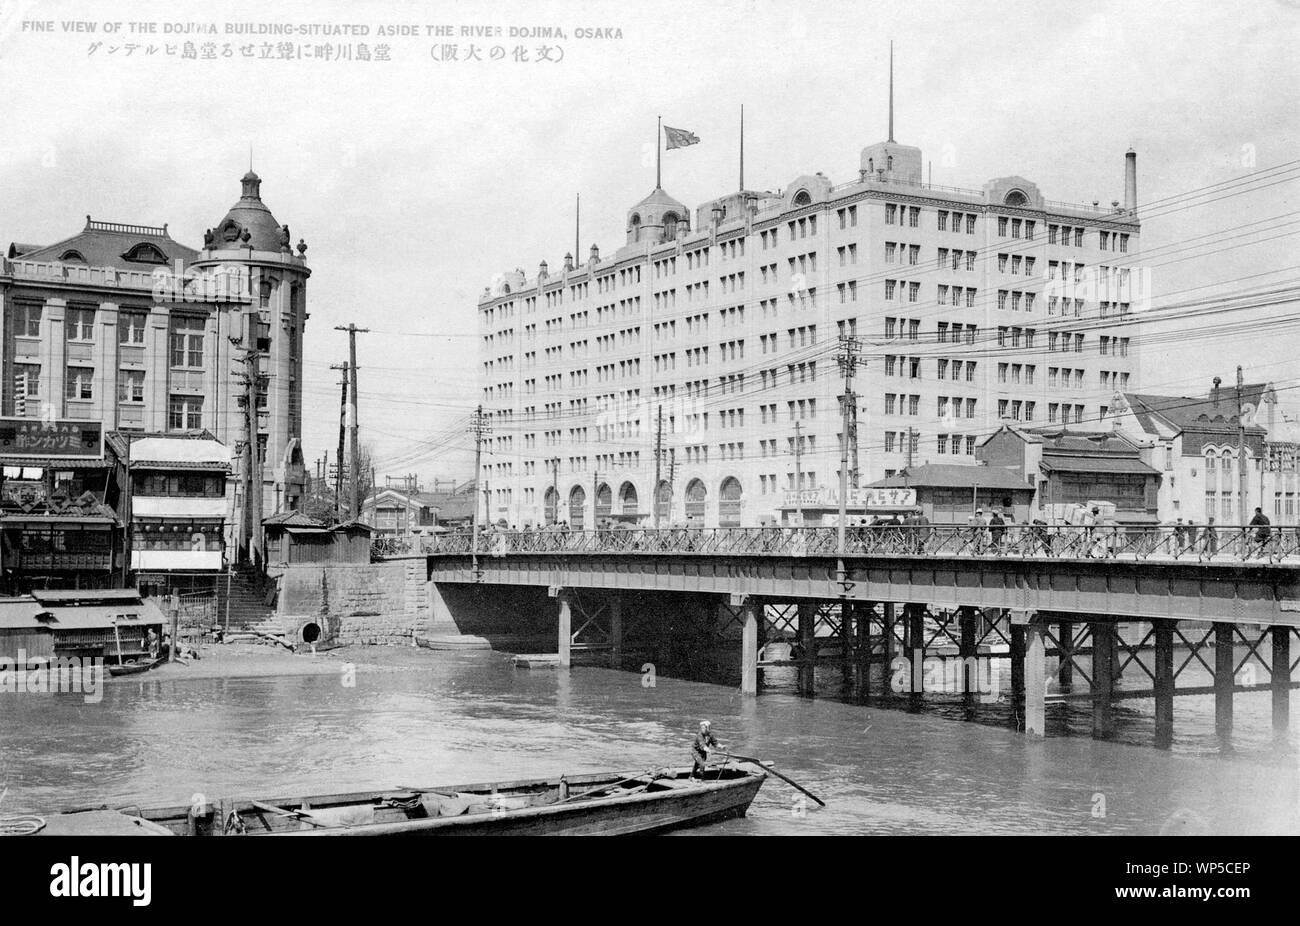 [1920s Japan - Oebashi Brücke in Osaka] - Oebashi Brücke über den Fluss Dojima in Osaka. Das große Gebäude ist die Dojima Gebäude, gebaut 1923 (taisho 12) von Takenaka Komuten. Das Gebäude mit der Kuppel Fukutoku Seimen Hoken (福徳生命保険). Es wurde entworfen von tatsuno Kingo (辰野金吾, 1854-1919) und Yasushi Kataoka (片岡安, 1876-1946) und im Jahre 1919 eröffnet (taisho 8). Die stählerne Brücke auf diesem Foto wurde 1910 (Meiji 43) gebaut. Bau der heutigen Brücke aus Stein wurde 1930 (Showa 5) gestartet. Diese Daten effektiv das Foto in den 1920er Jahren. 20. jahrhundert alte Ansichtskarte. Stockfoto